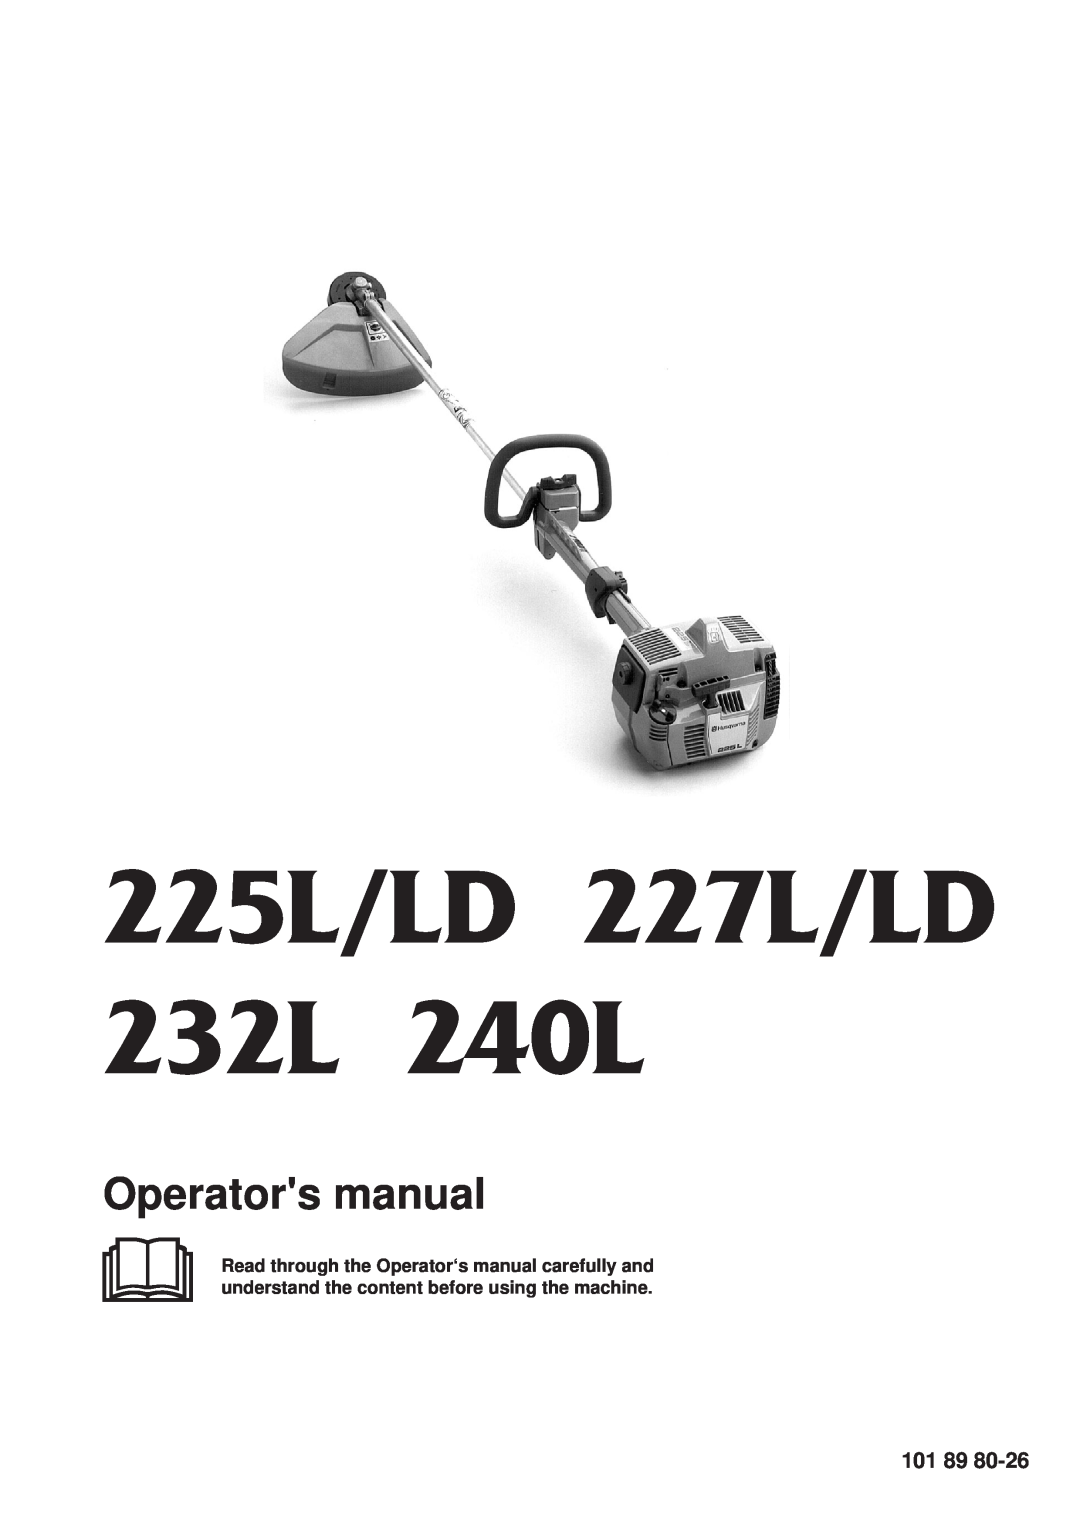 Husqvarna 225LD, 227LD manual 101 89, 225L/LD 227L/LD 232L 240L, Operators manual 